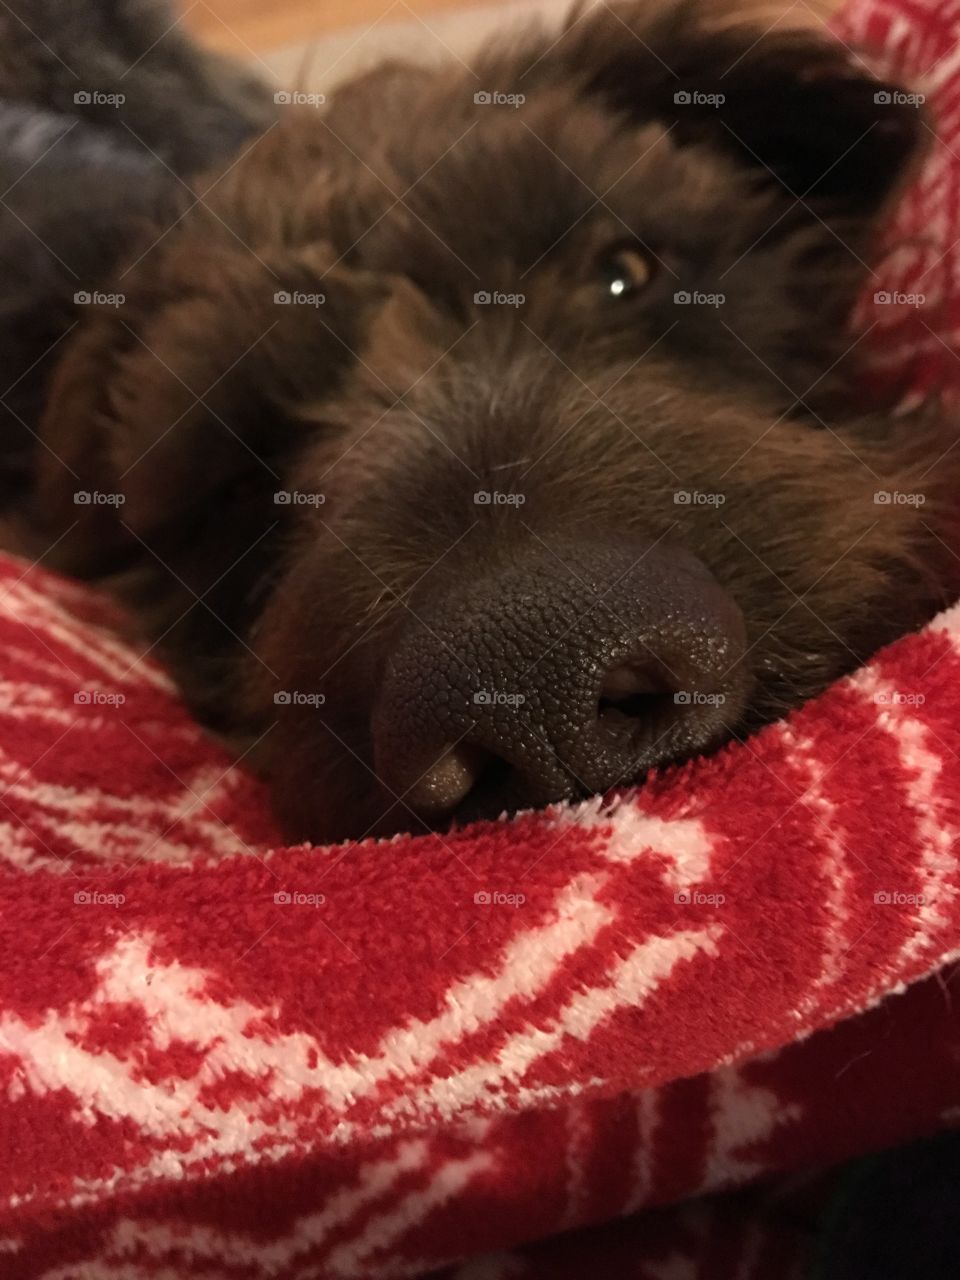 sleepy Dog nose on Christmas blanket